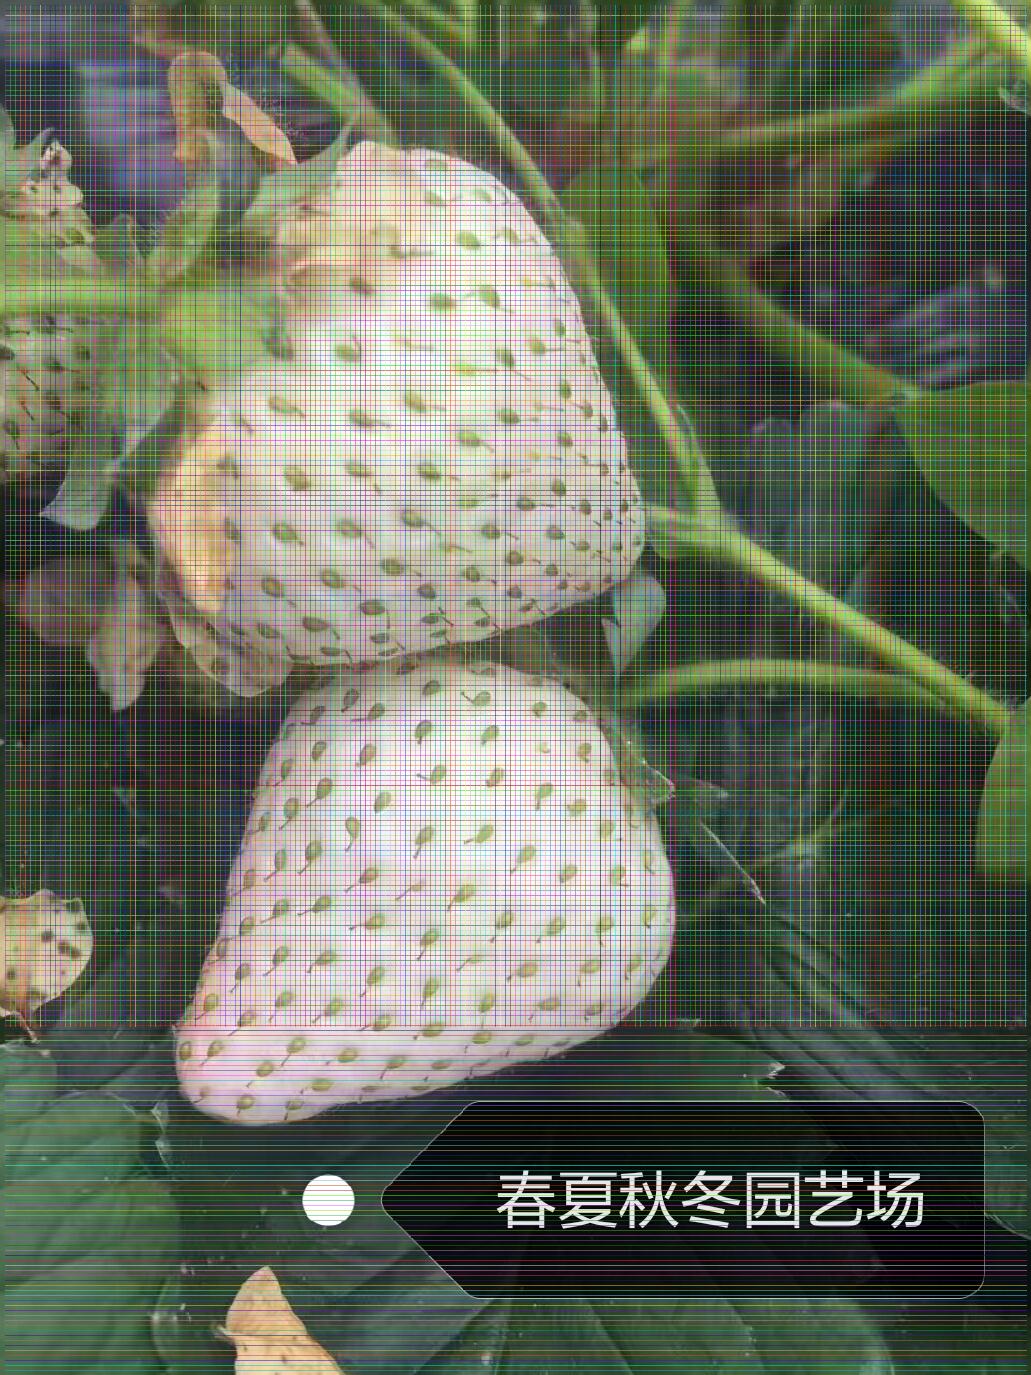 来宾石莓7号草莓苗一亩种植多少/新品上市